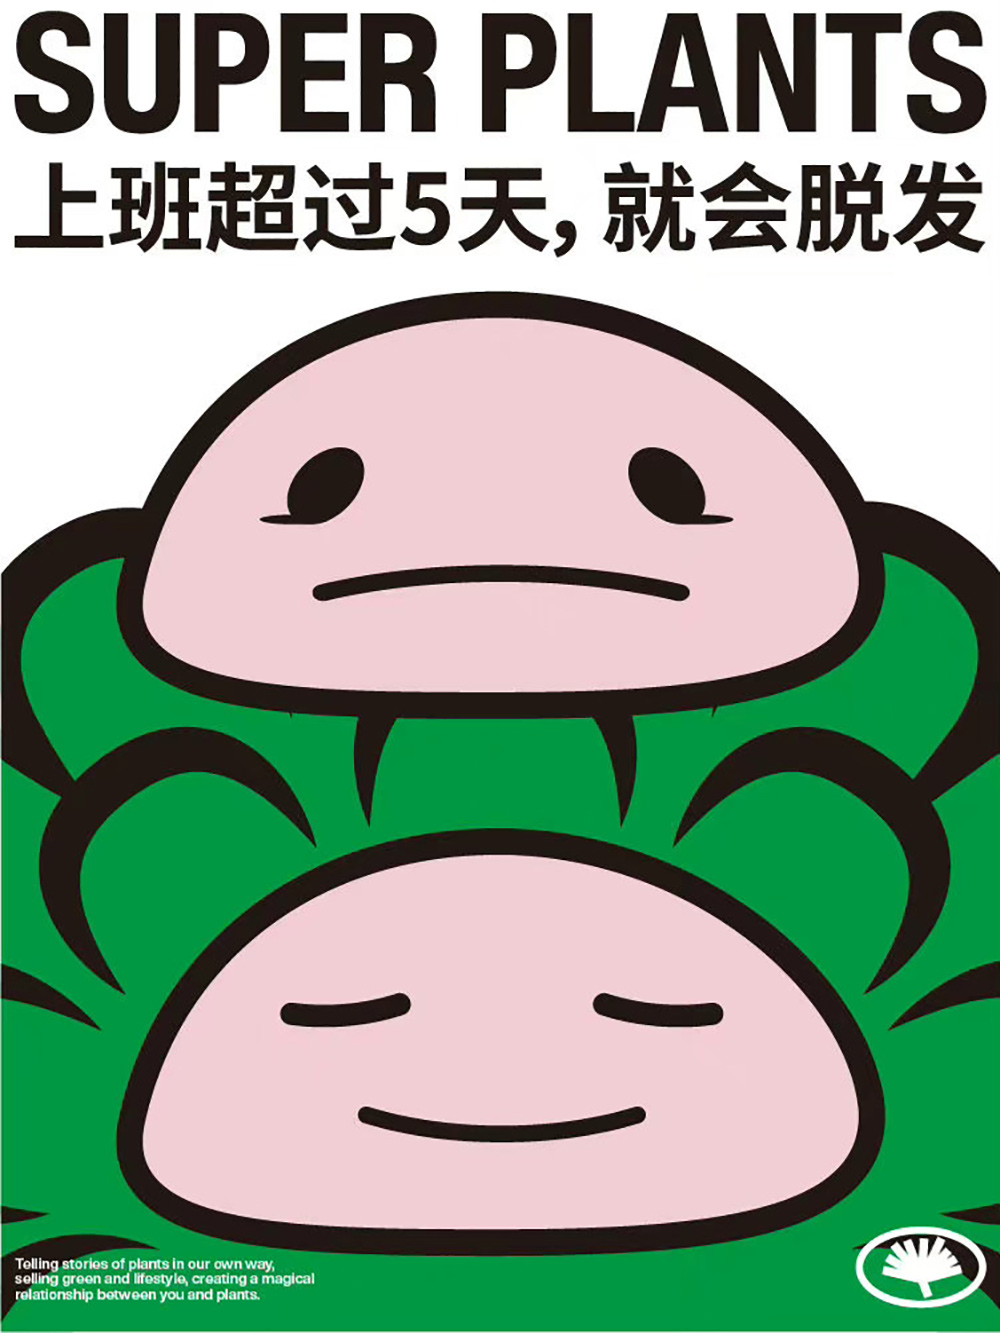 元气品牌！24张超级植物公司海报设计